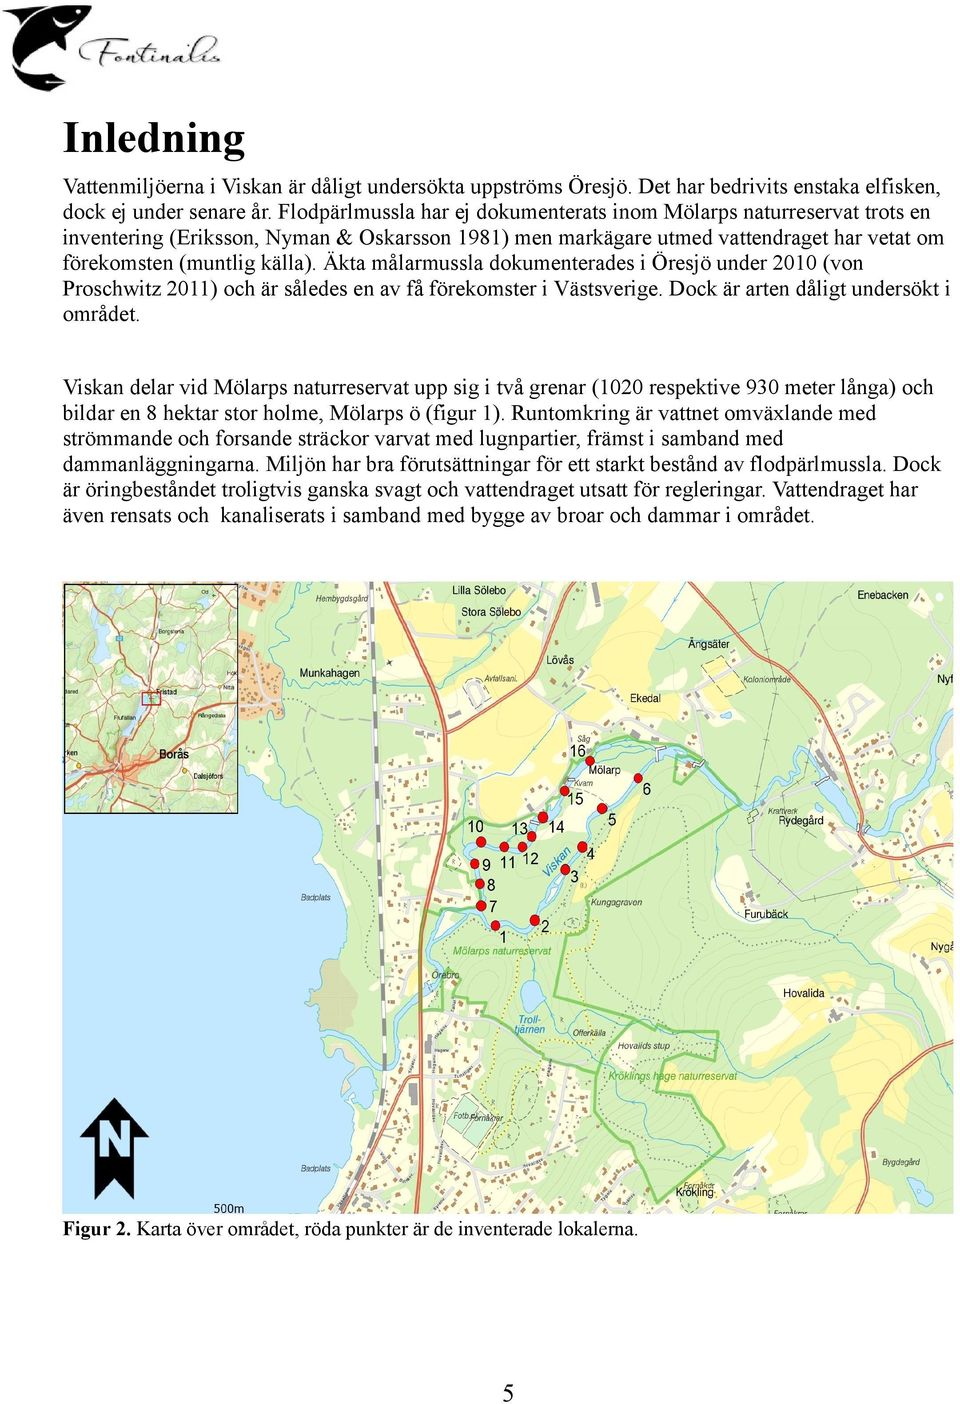 Äkta målarmussla dokumenterades i Öresjö under 21 (von Proschwitz 211) och är således en av få förekomster i Västsverige. Dock är arten dåligt undersökt i området.